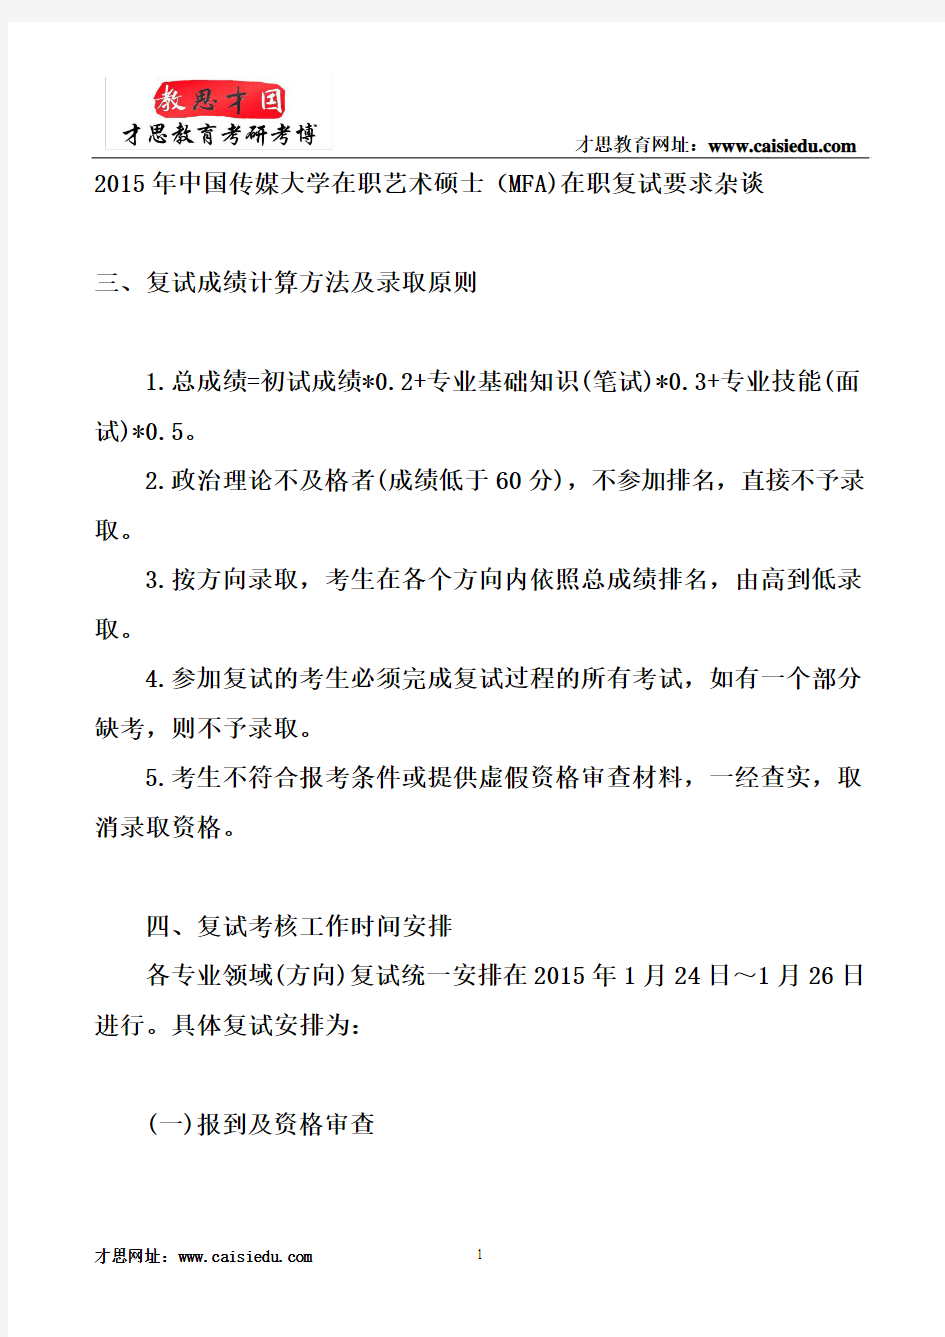 2015年中国传媒大学在职艺术硕士(MFA)在职复试要求杂谈